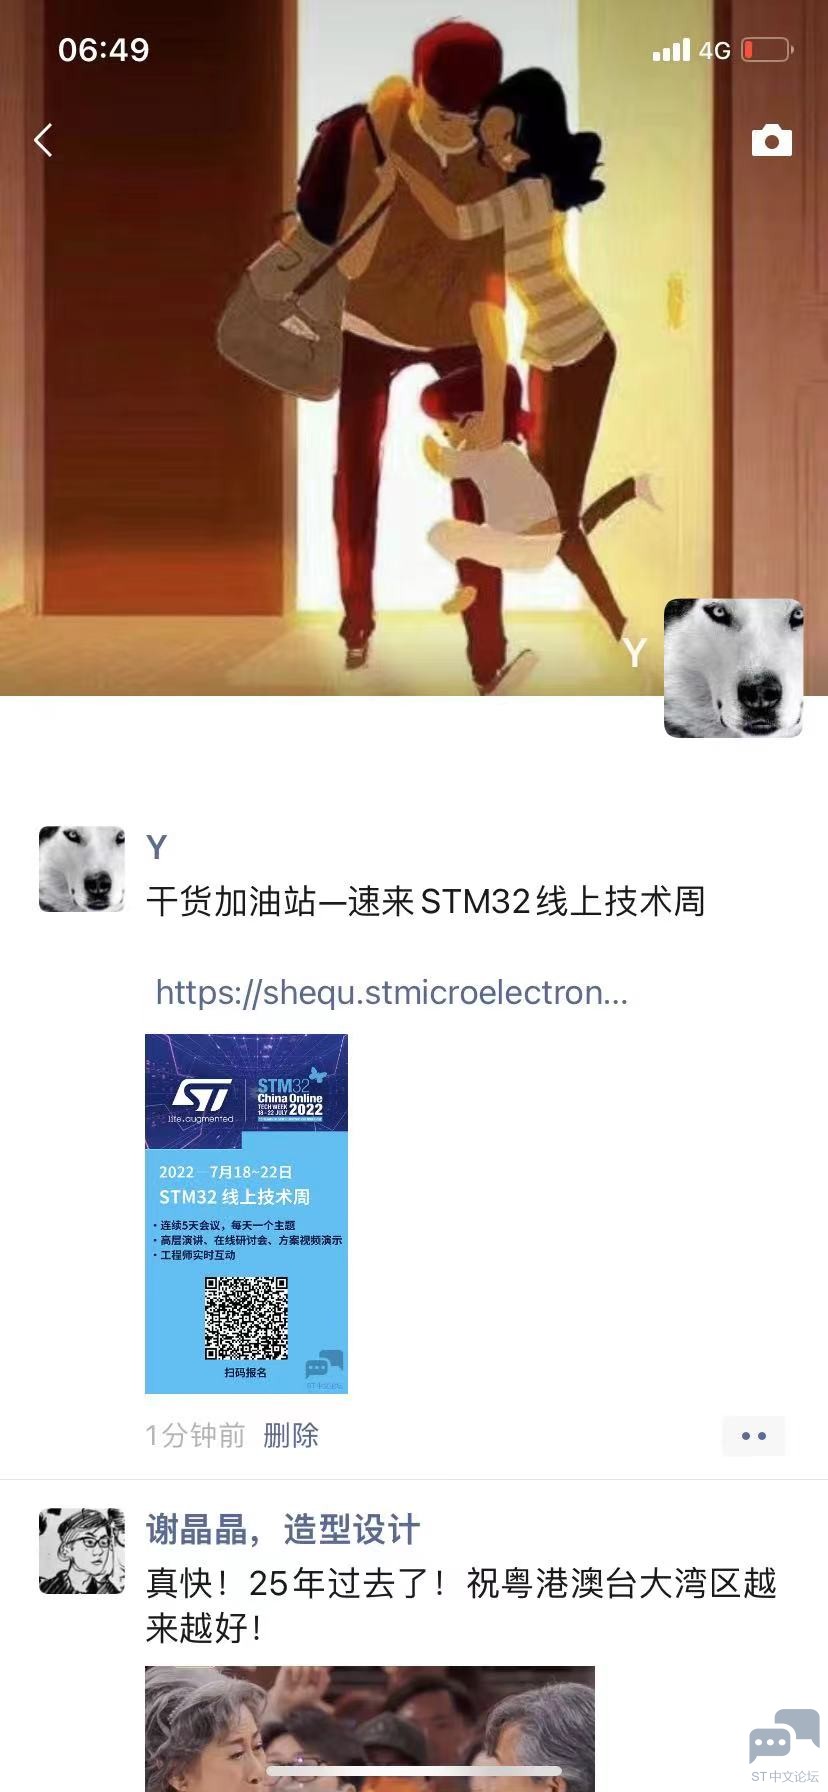 WeChat Image_20220701092146.jpg